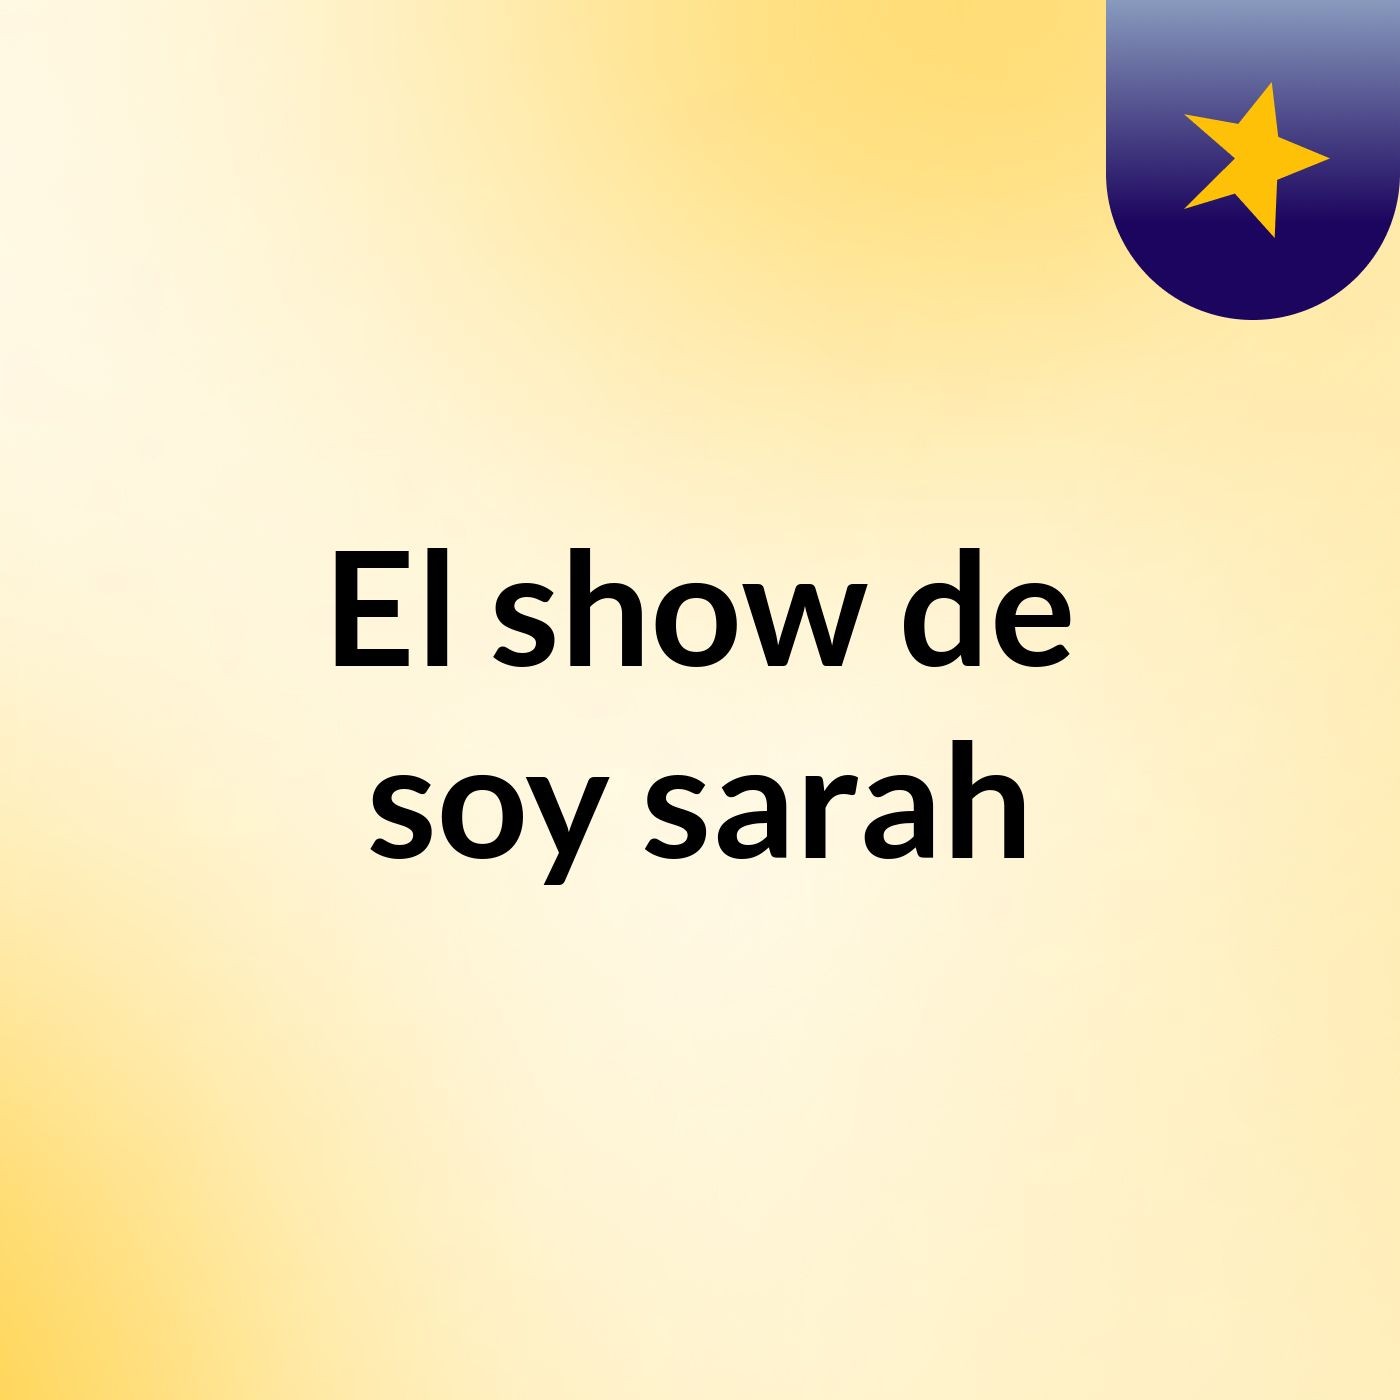 El show de soy sarah